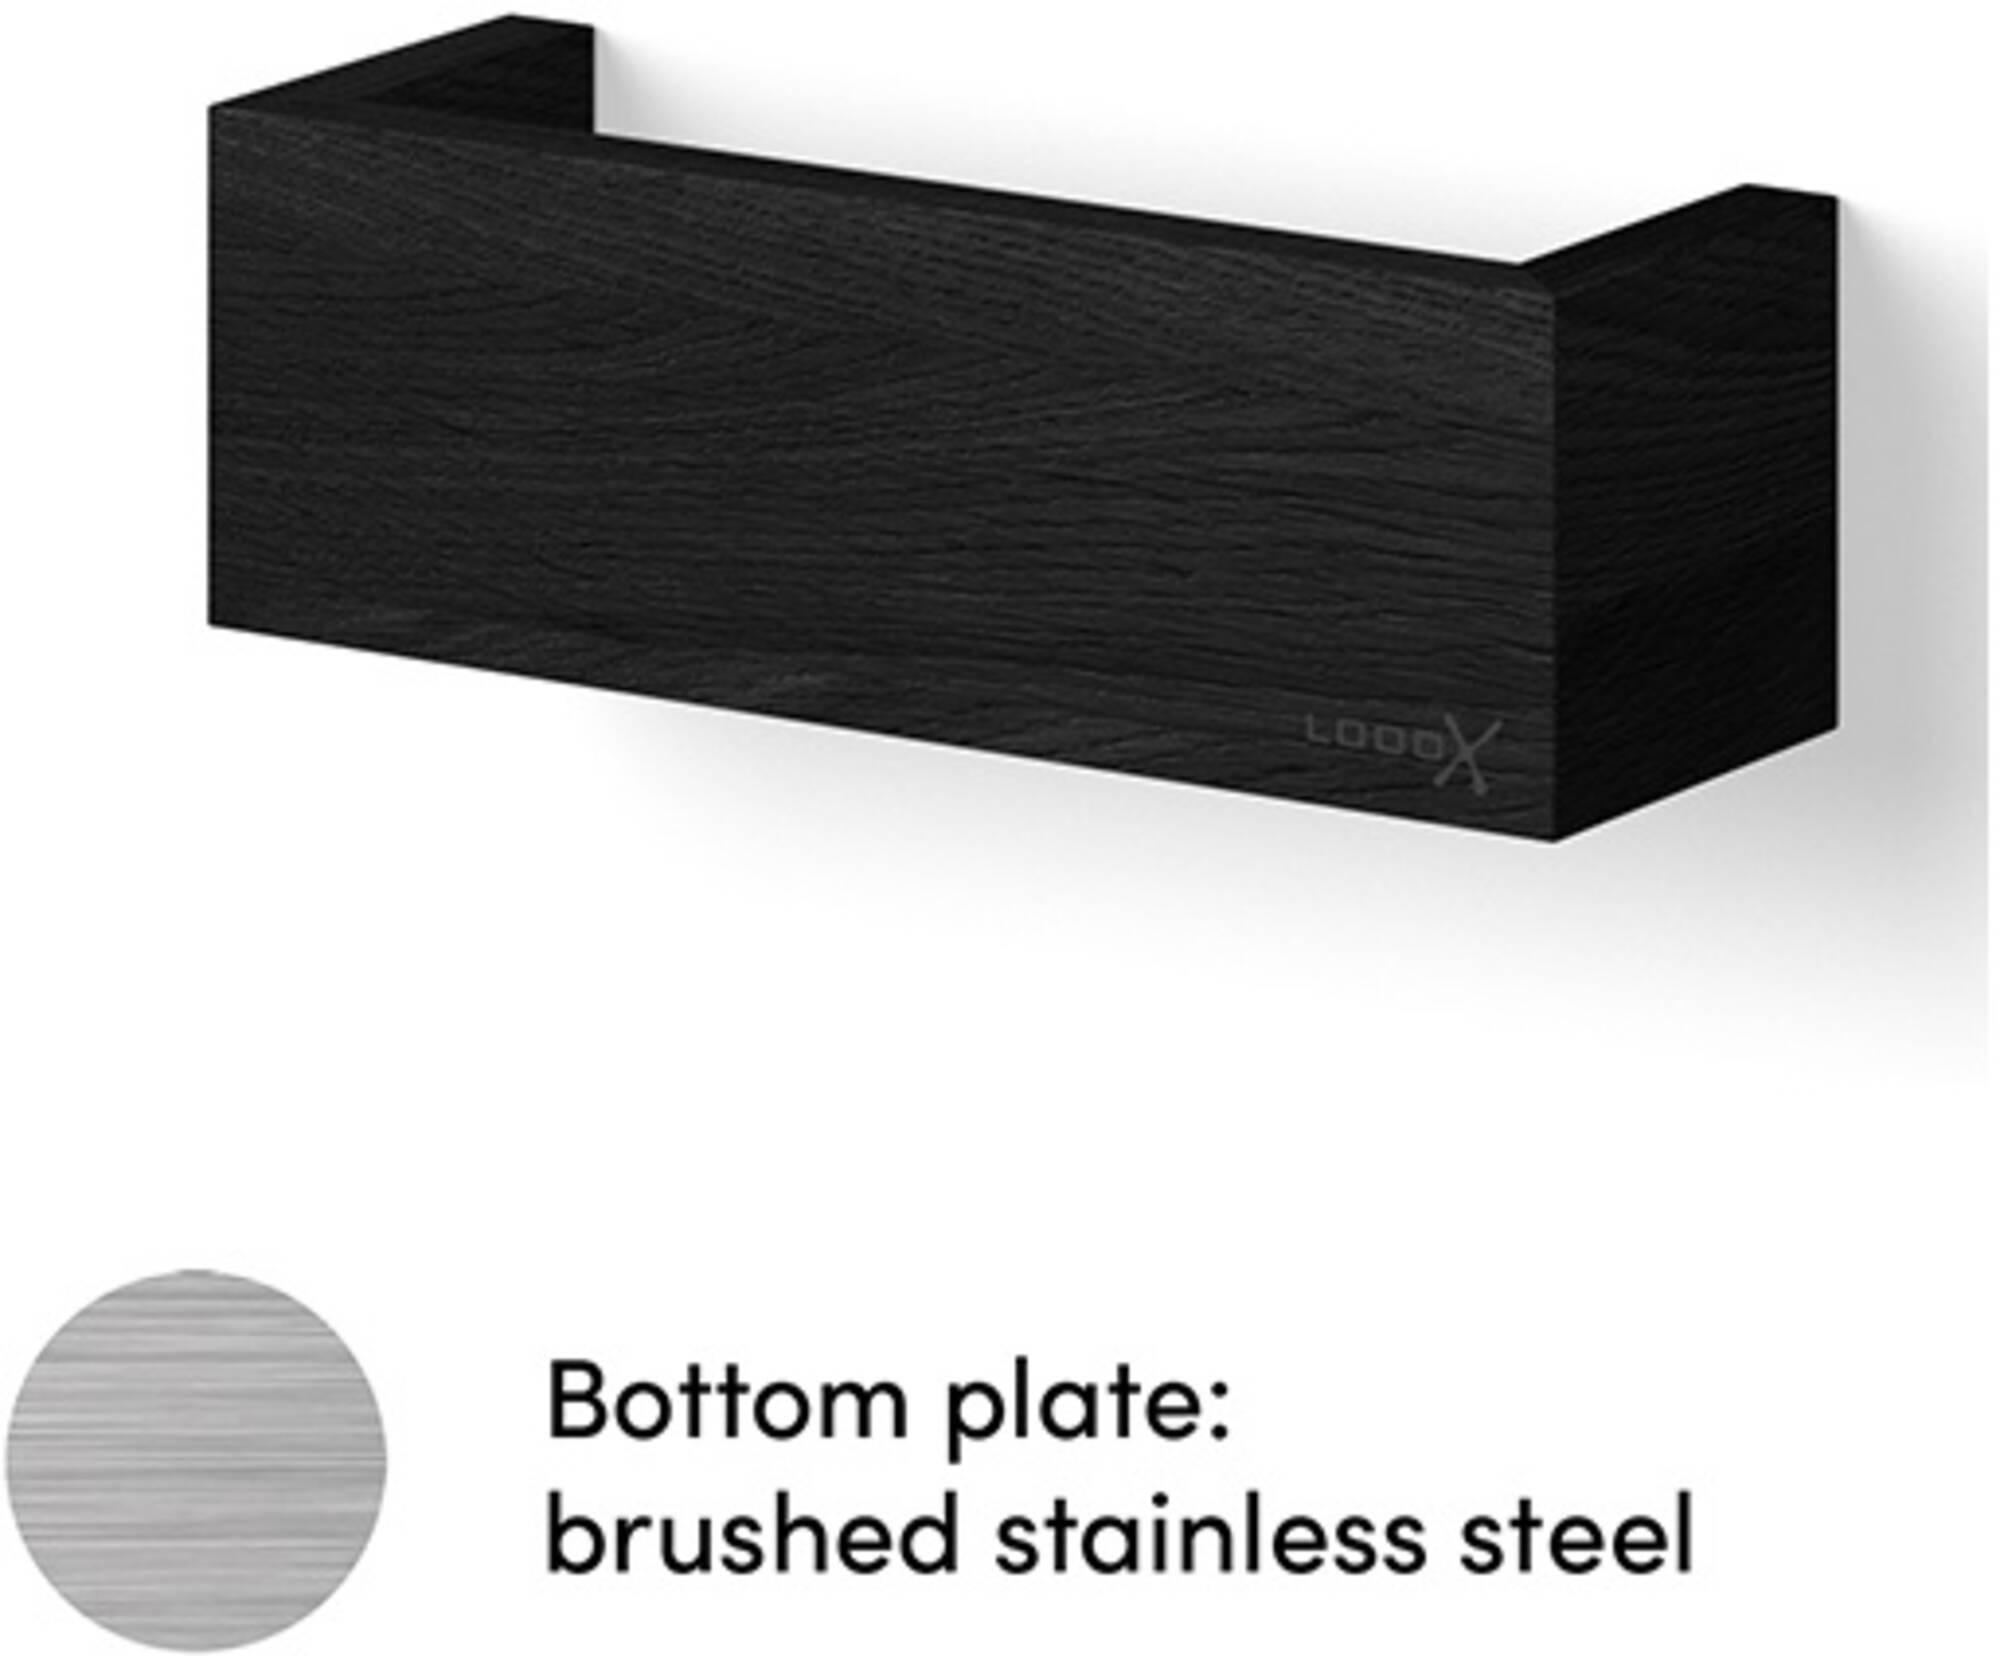 Looox Wooden Shelf BoX Wandplank 30x10x10 cm Black / RVS